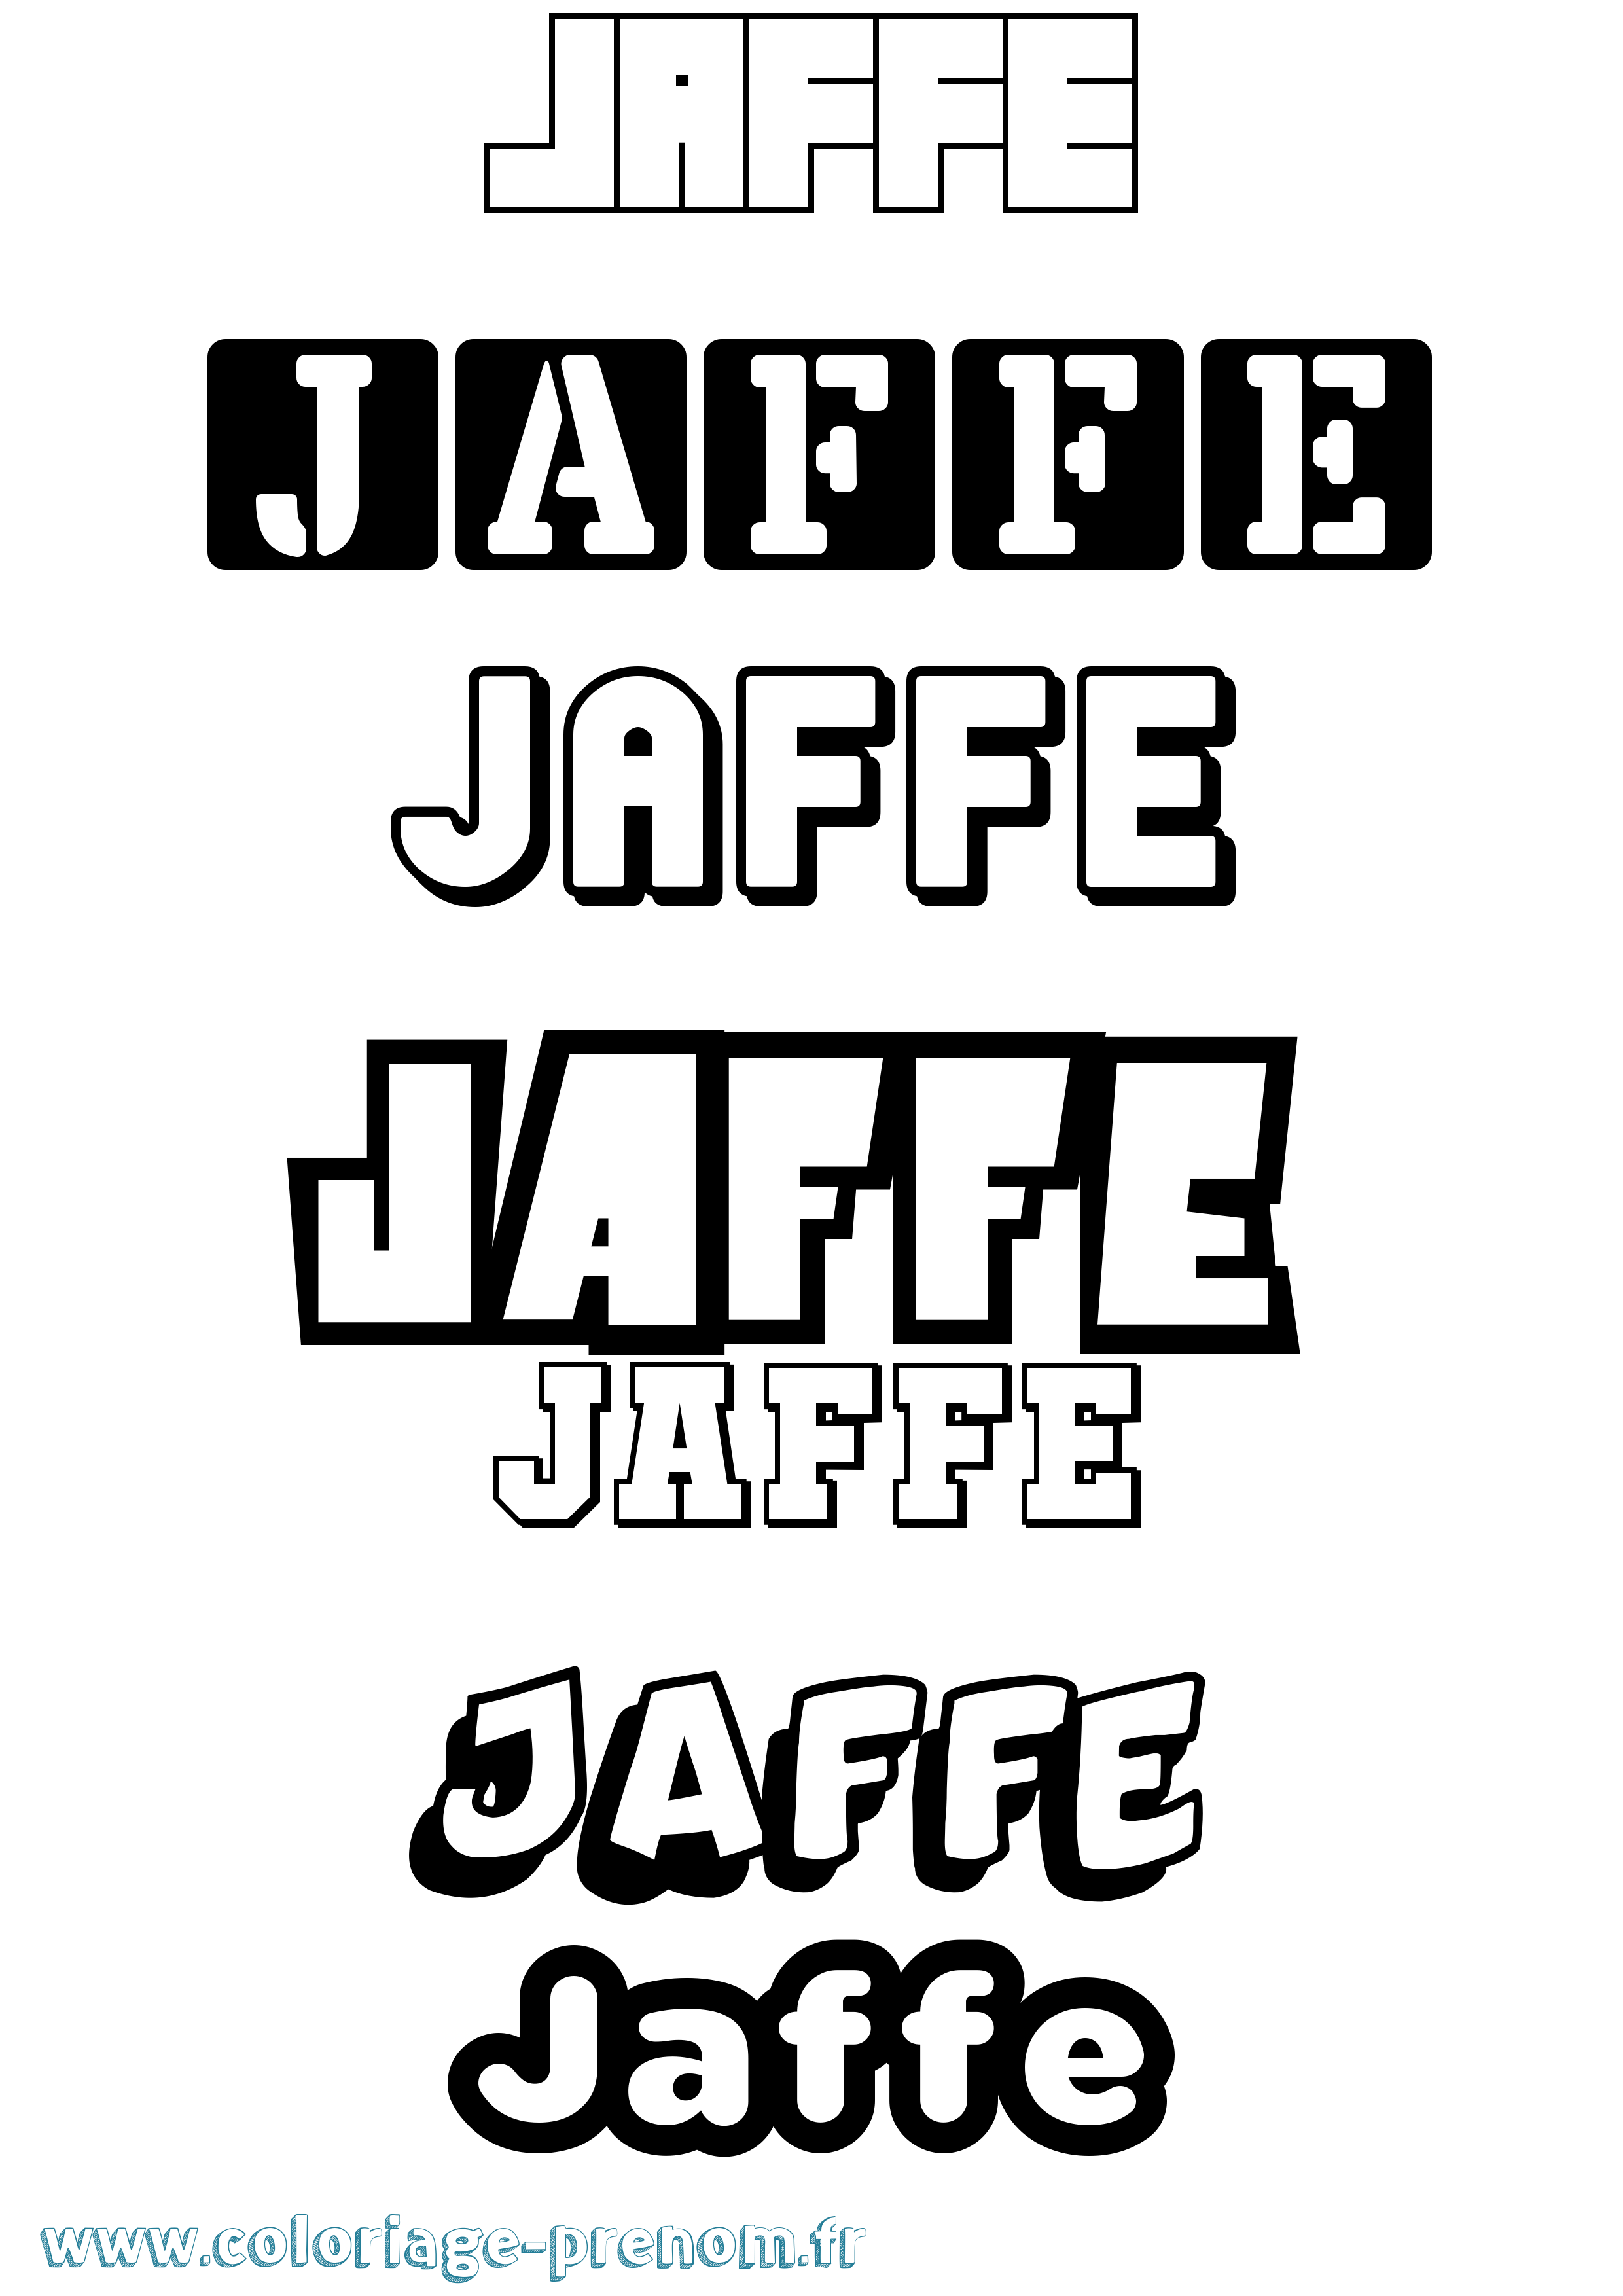 Coloriage prénom Jaffe Simple